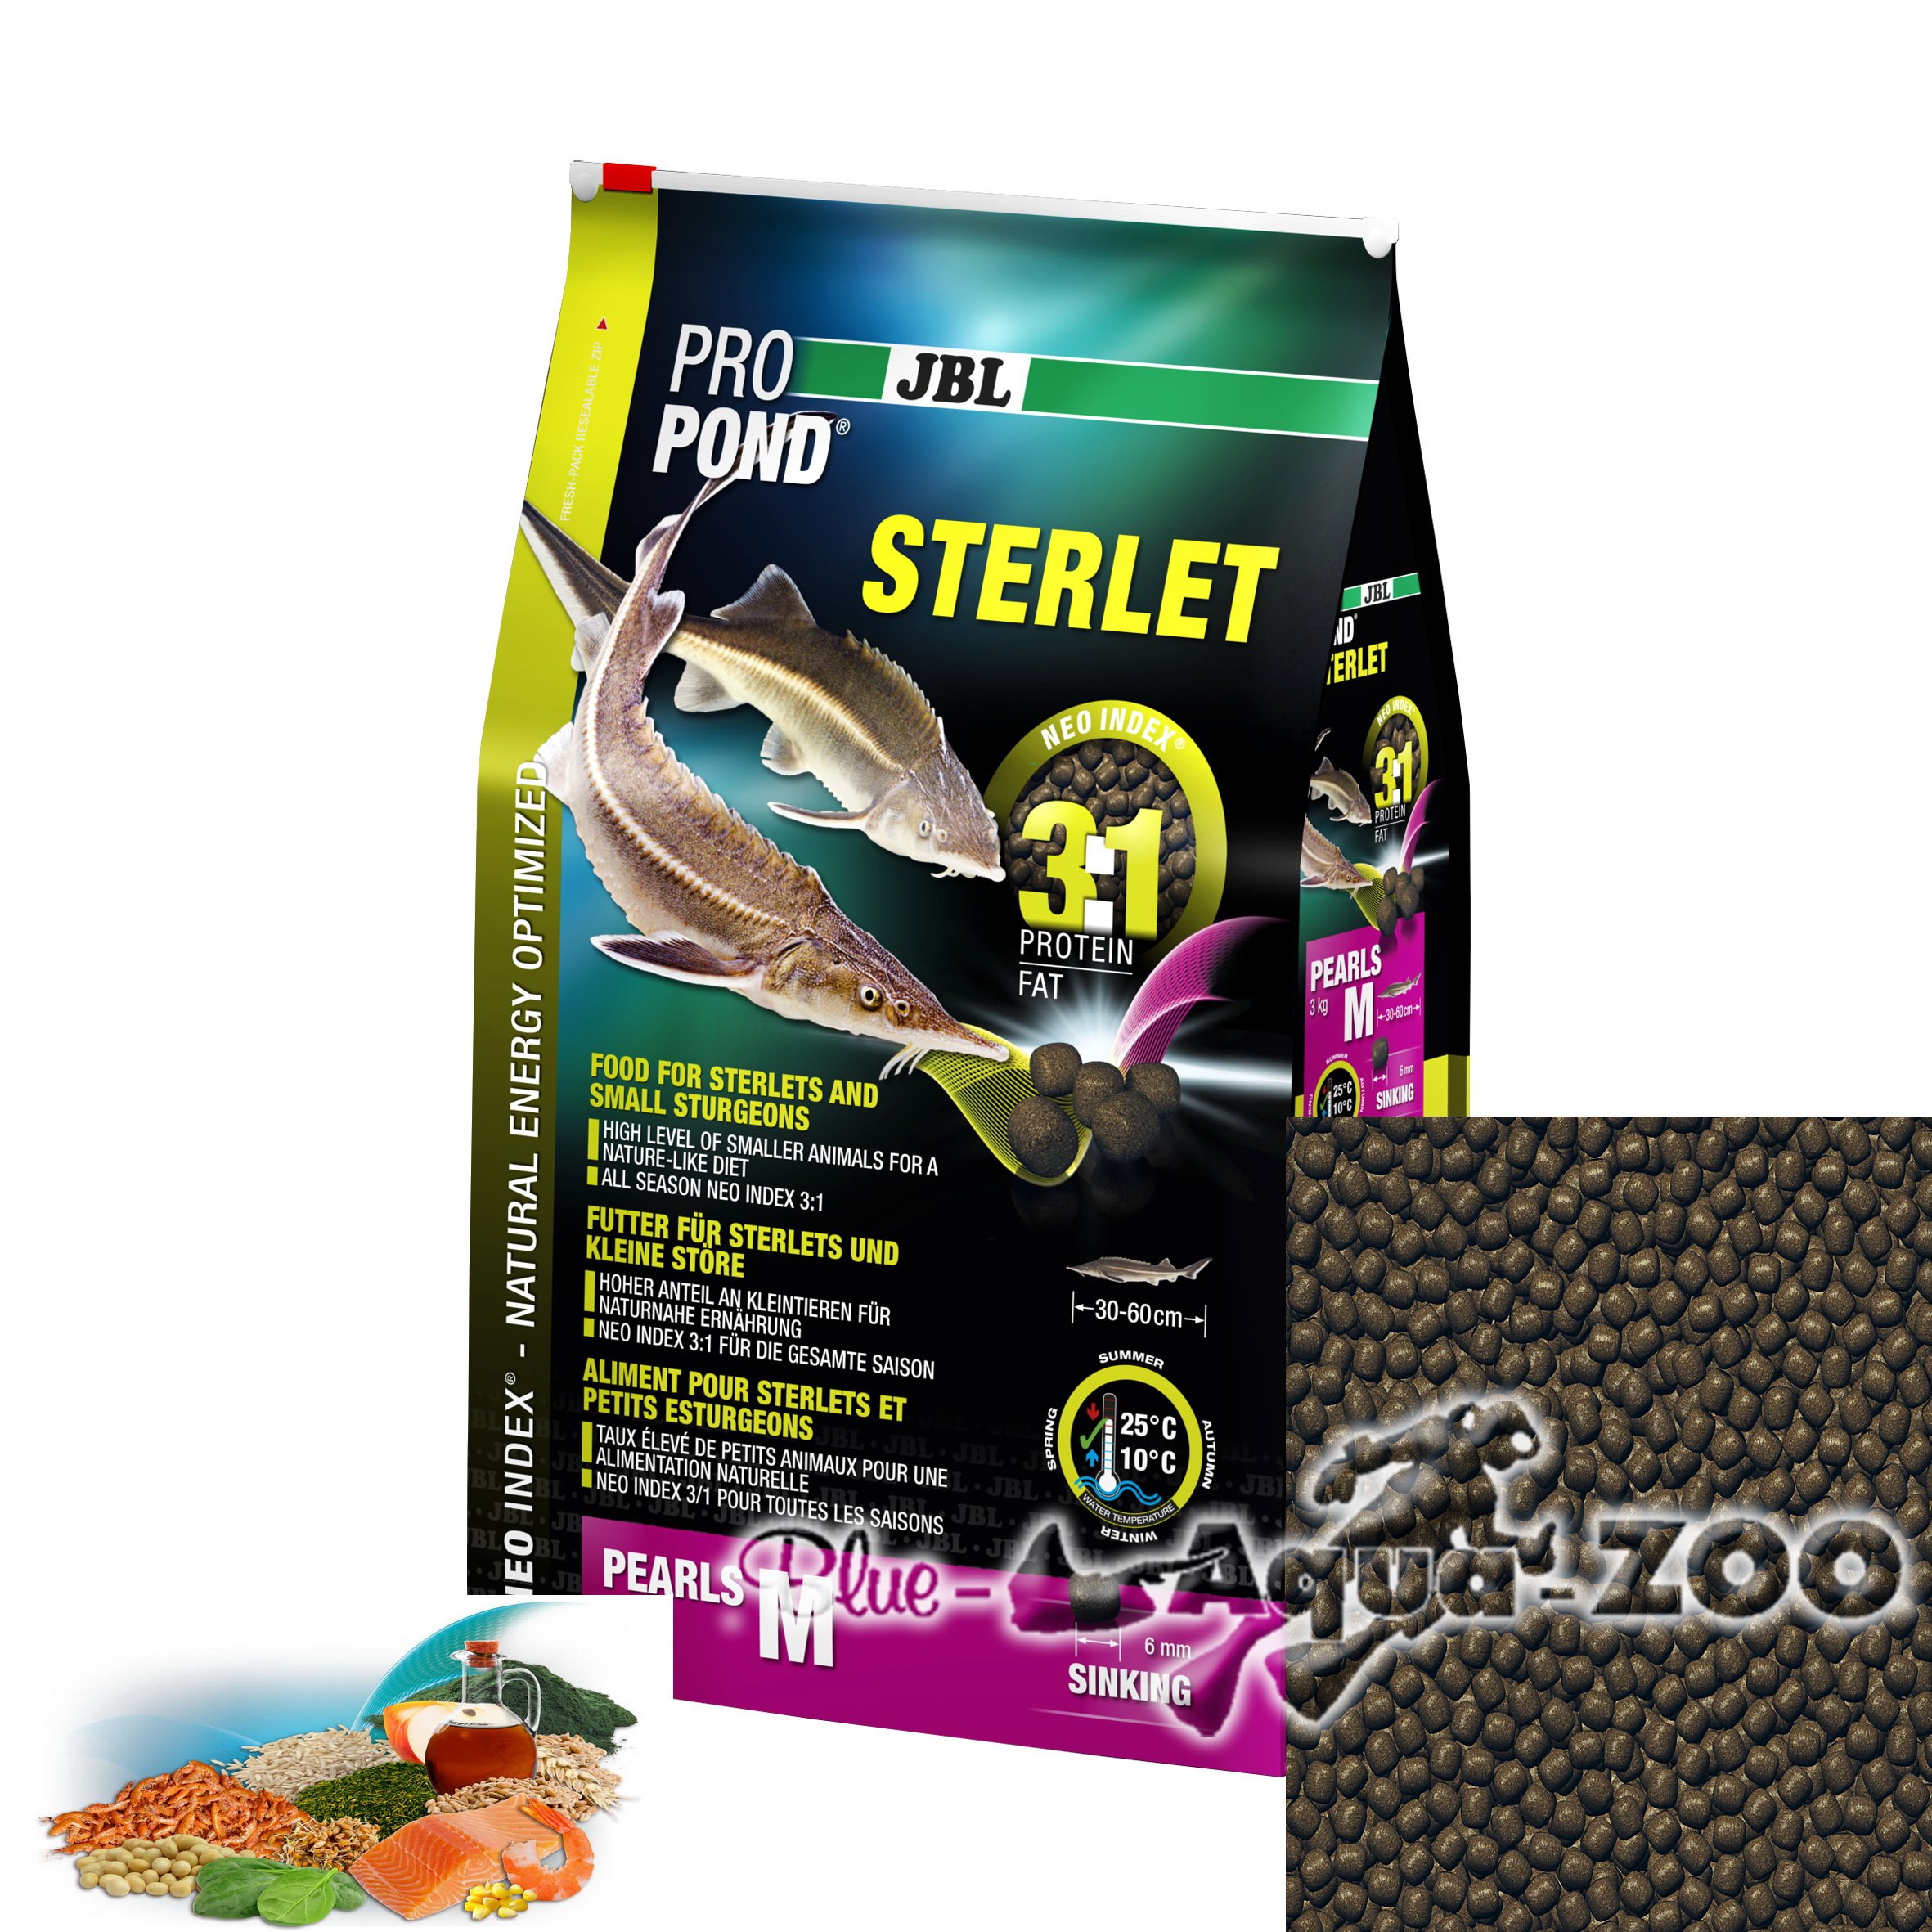 JBL Futter für Sterlets und kleine Störe, Sinkende Futterperlen, Spezialfutter, ProPond Sterlet, Göße M, 6,0 kg